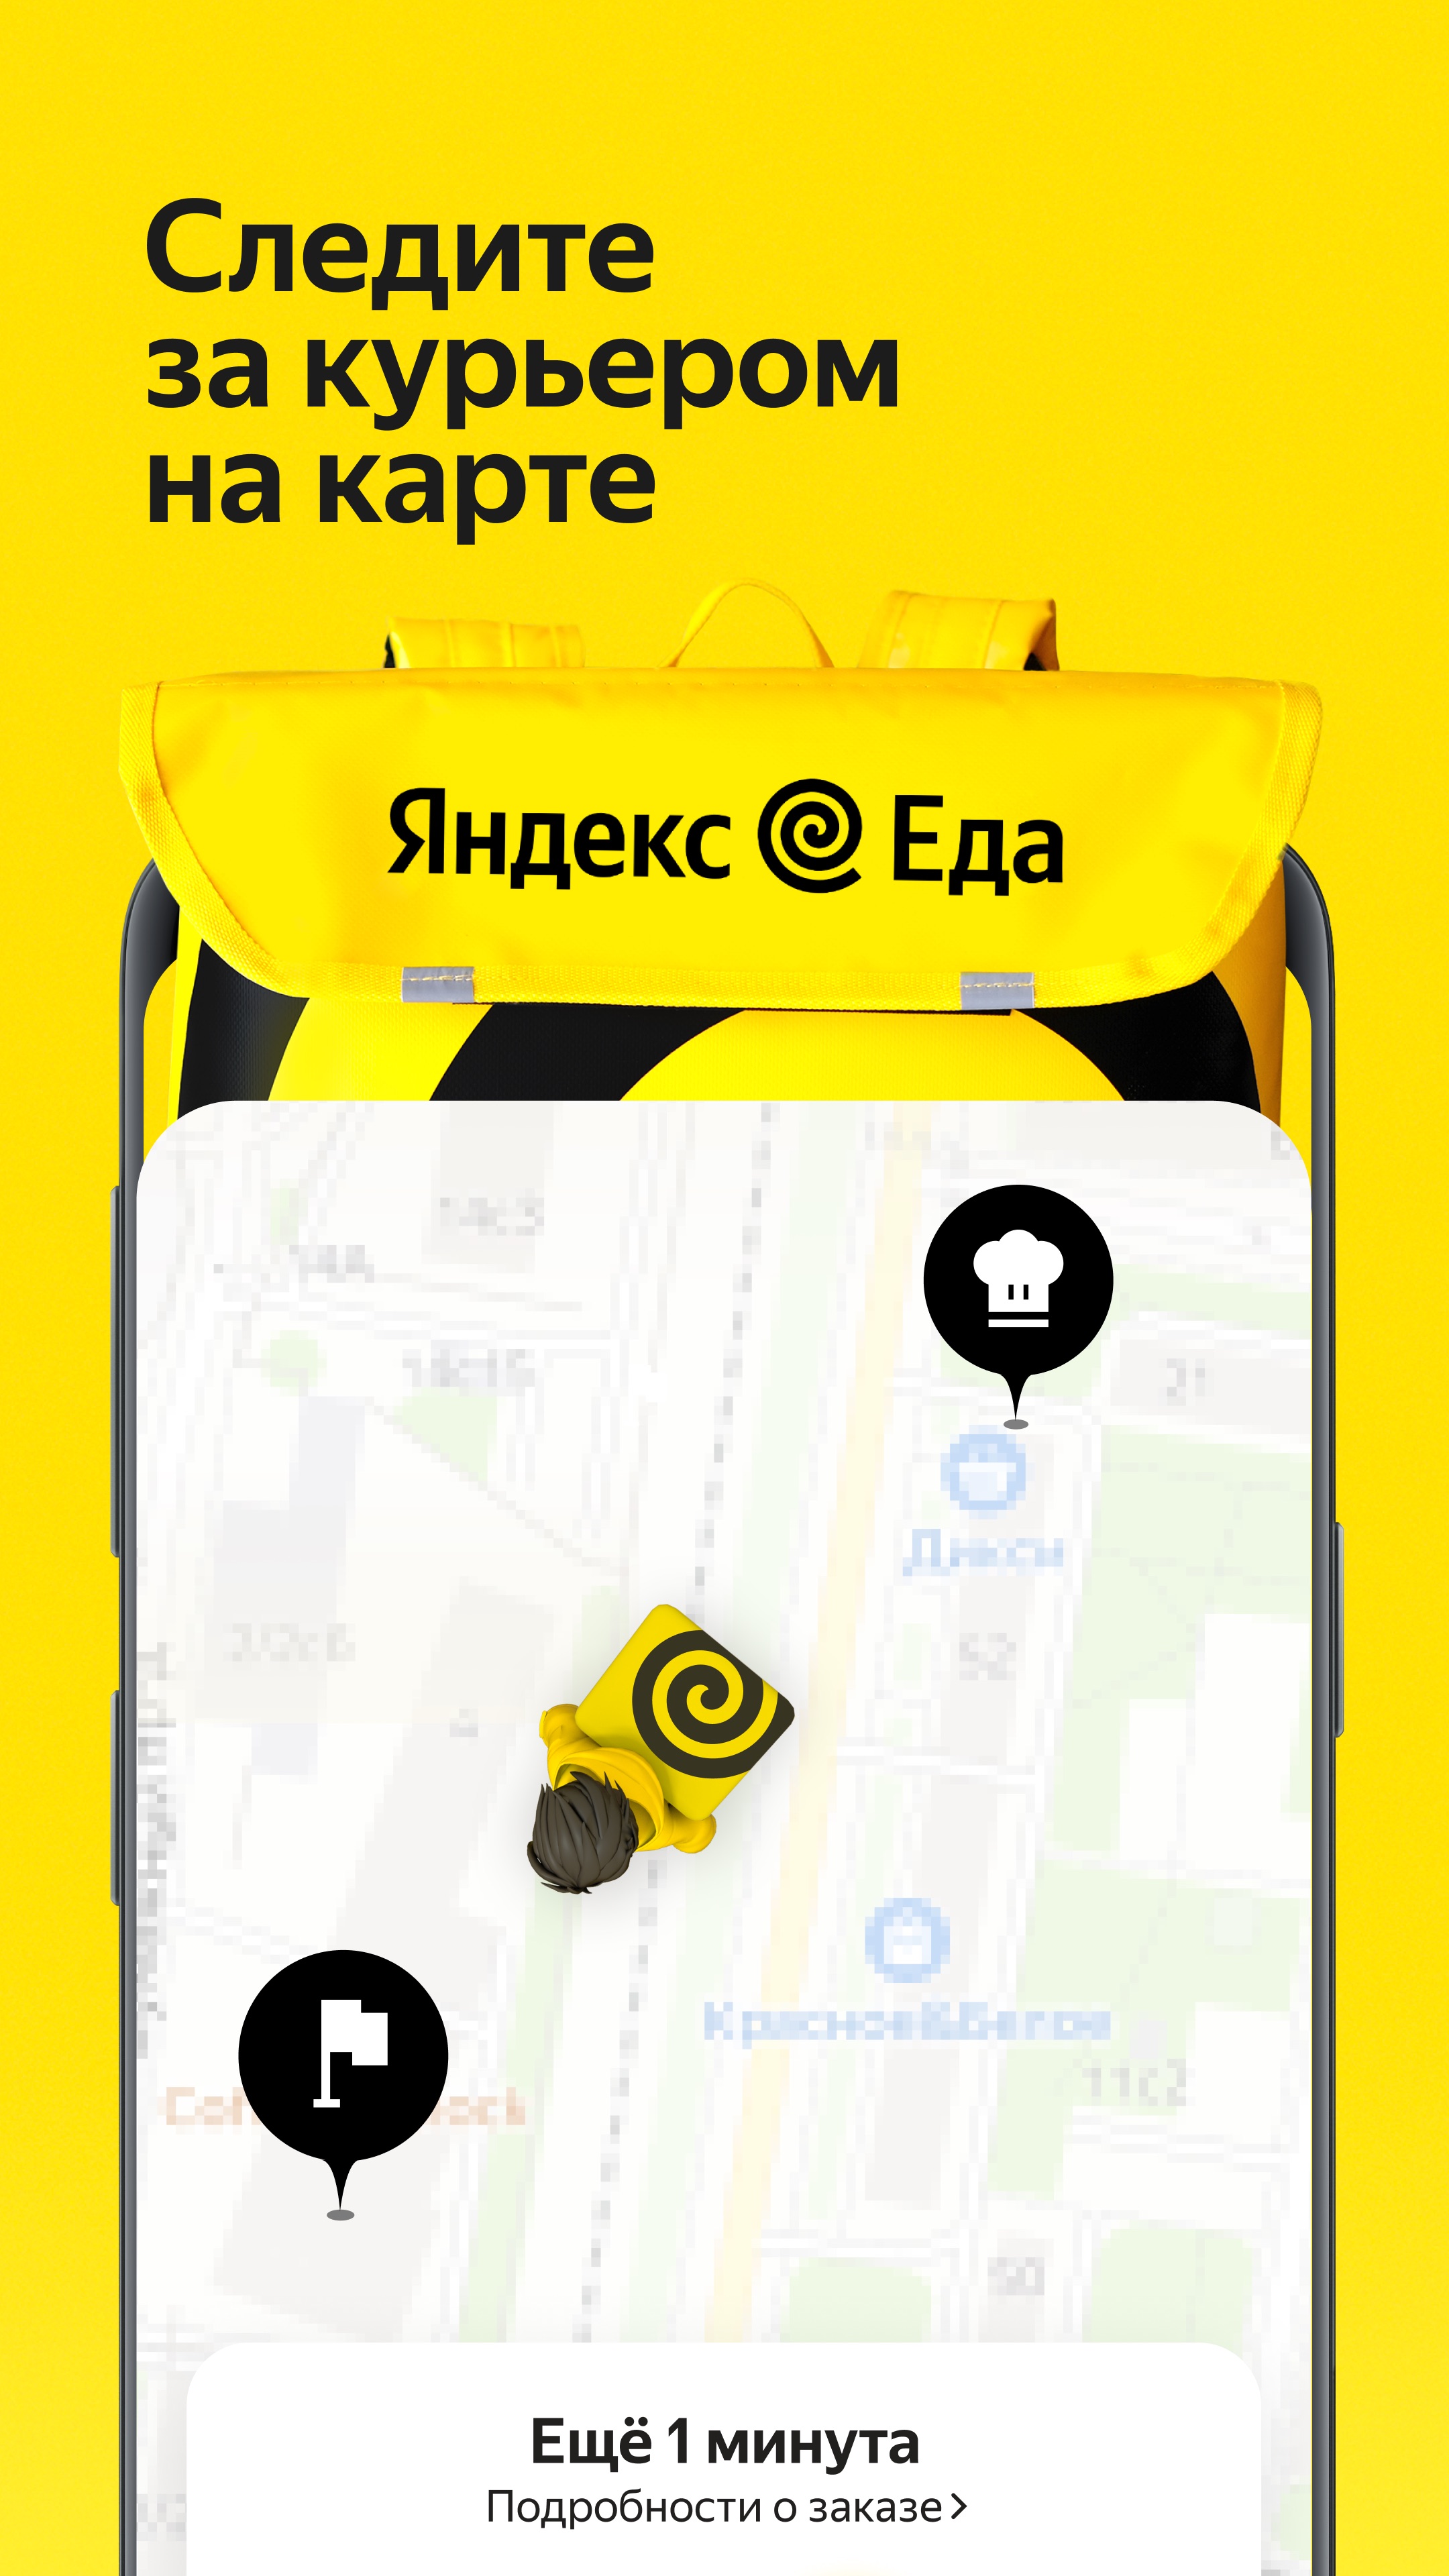 Изображение: Яндекс Еда: доставка еды